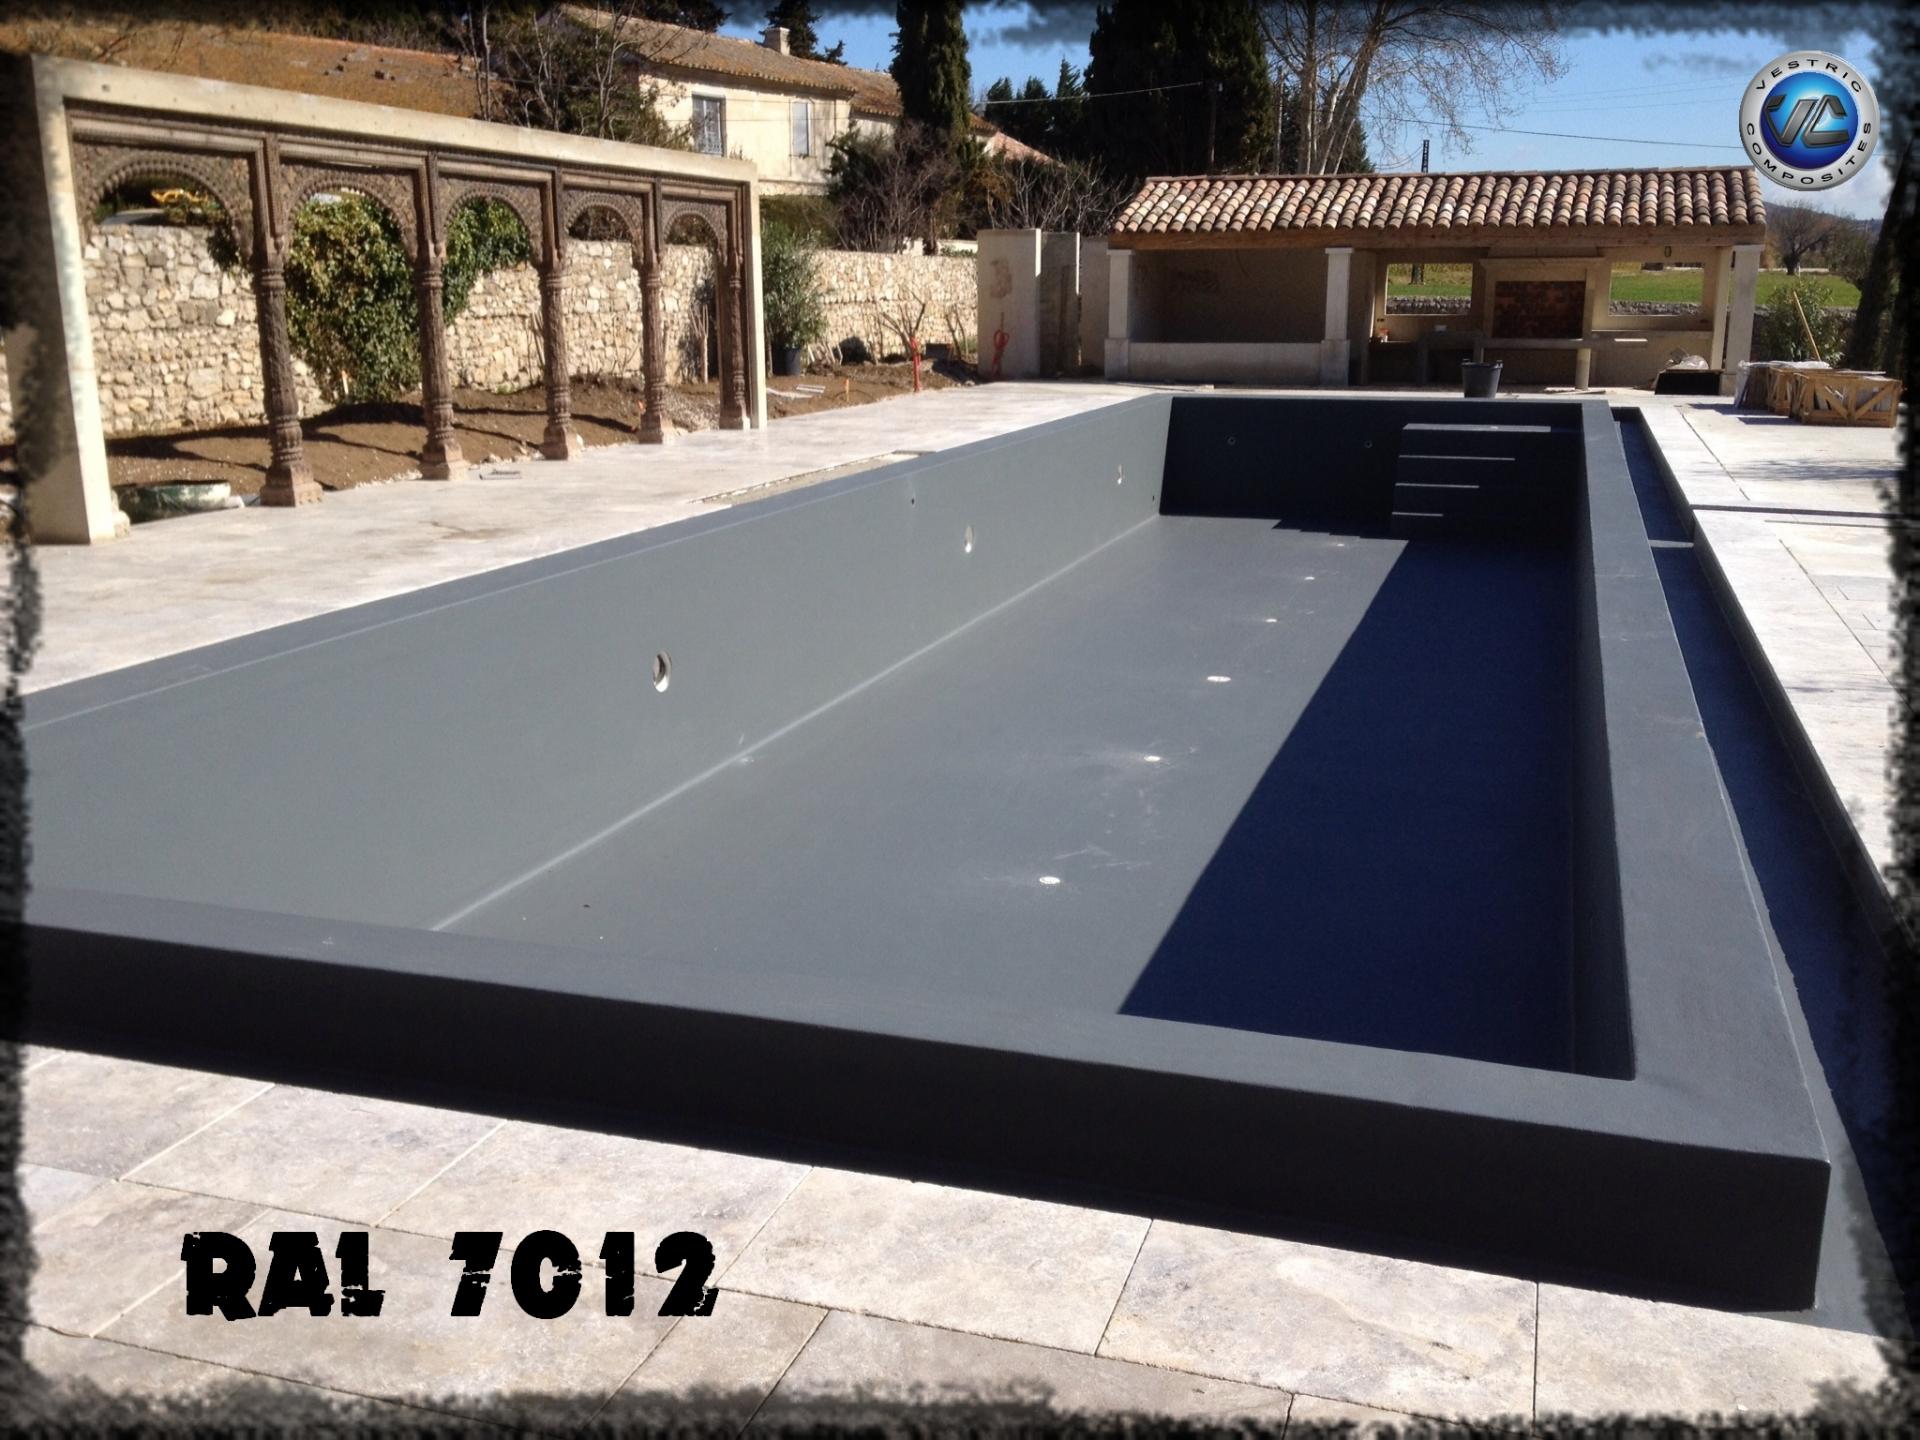 Ral 7012 couleur gris balzate anthracite piscine en eau vestric composites 5